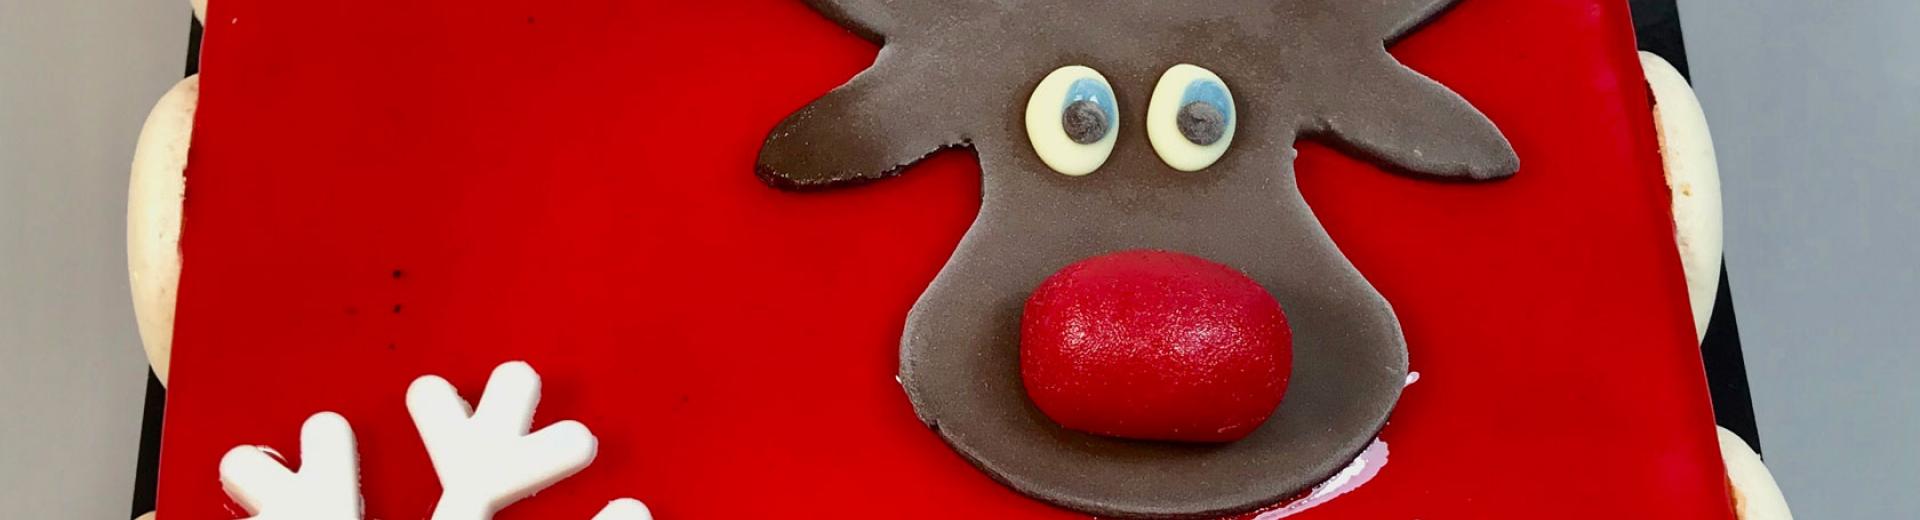 Desserts création de Noël Rudolph, le renne au au nez rouge